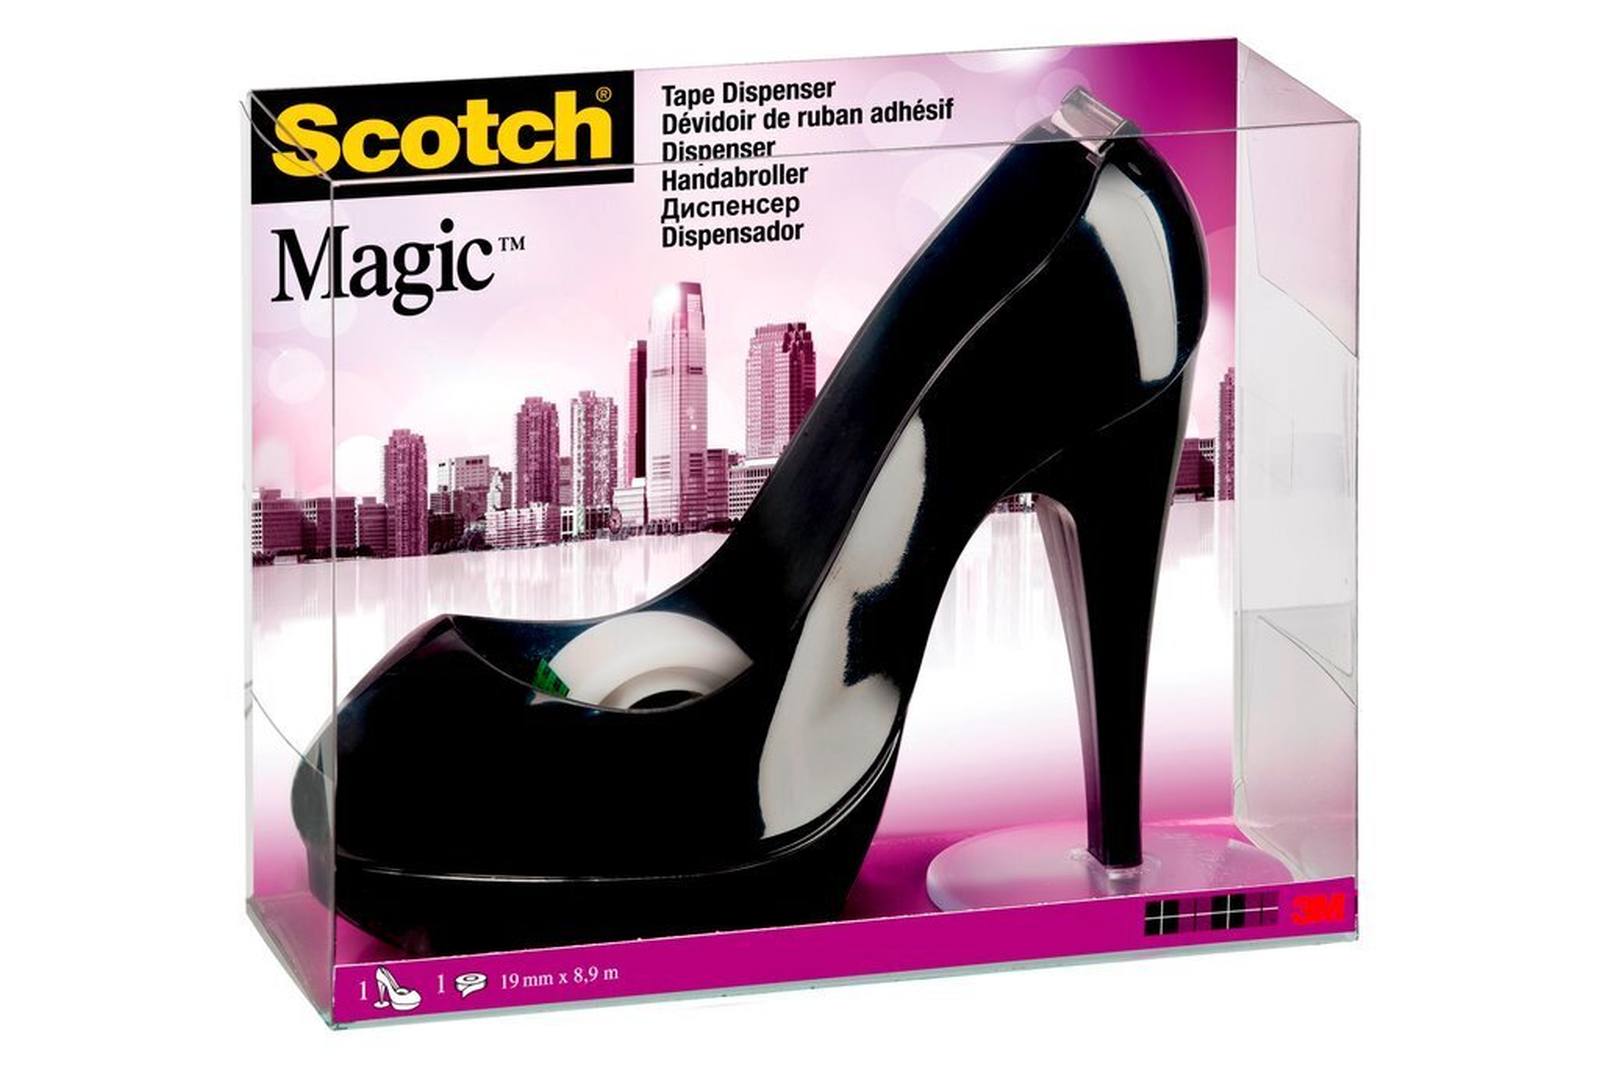 3M Zwarte schoenvormige handdispenser incl. 1 rol Scotch Magic plakband, 19 mm x 8,9 m